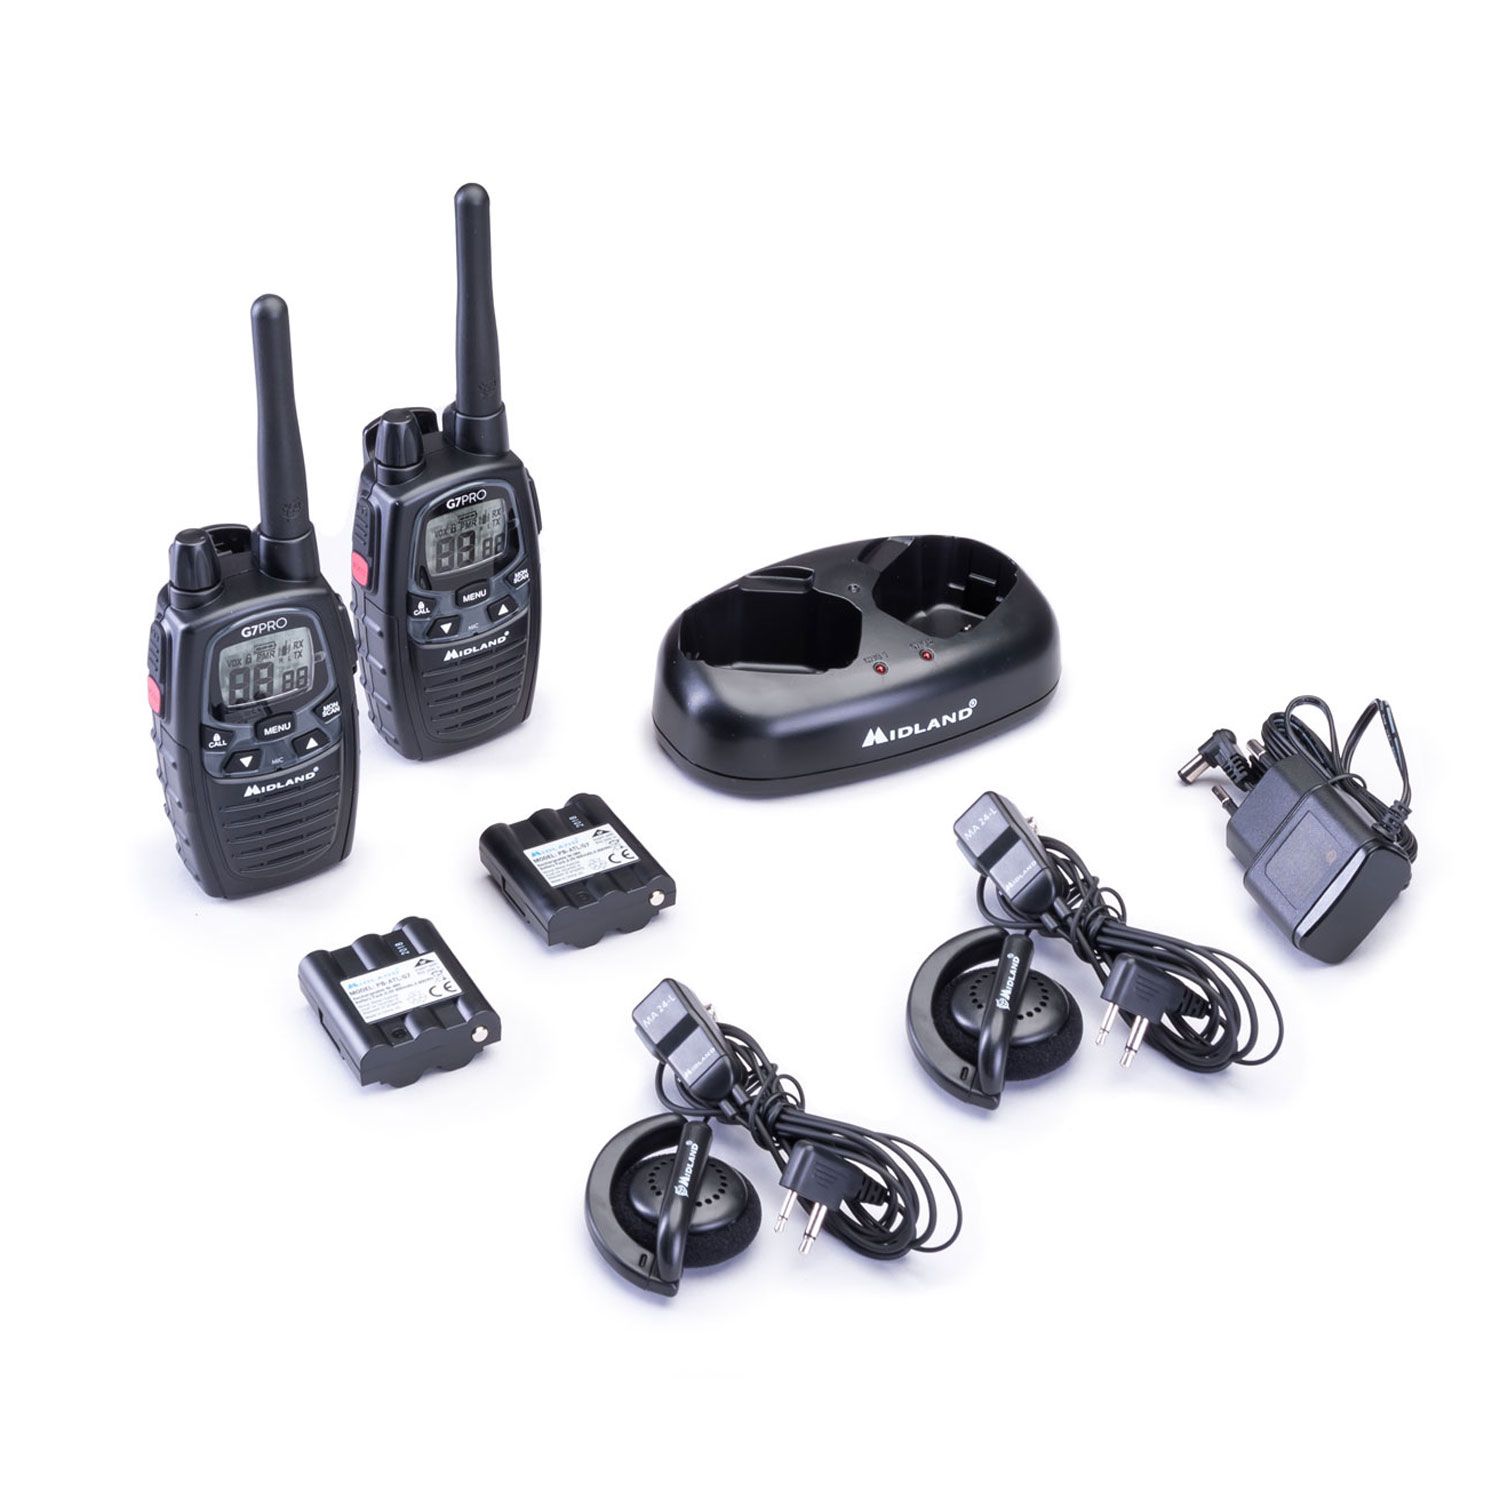 Midland G7 Pro Talkie-walkie  Work Edition